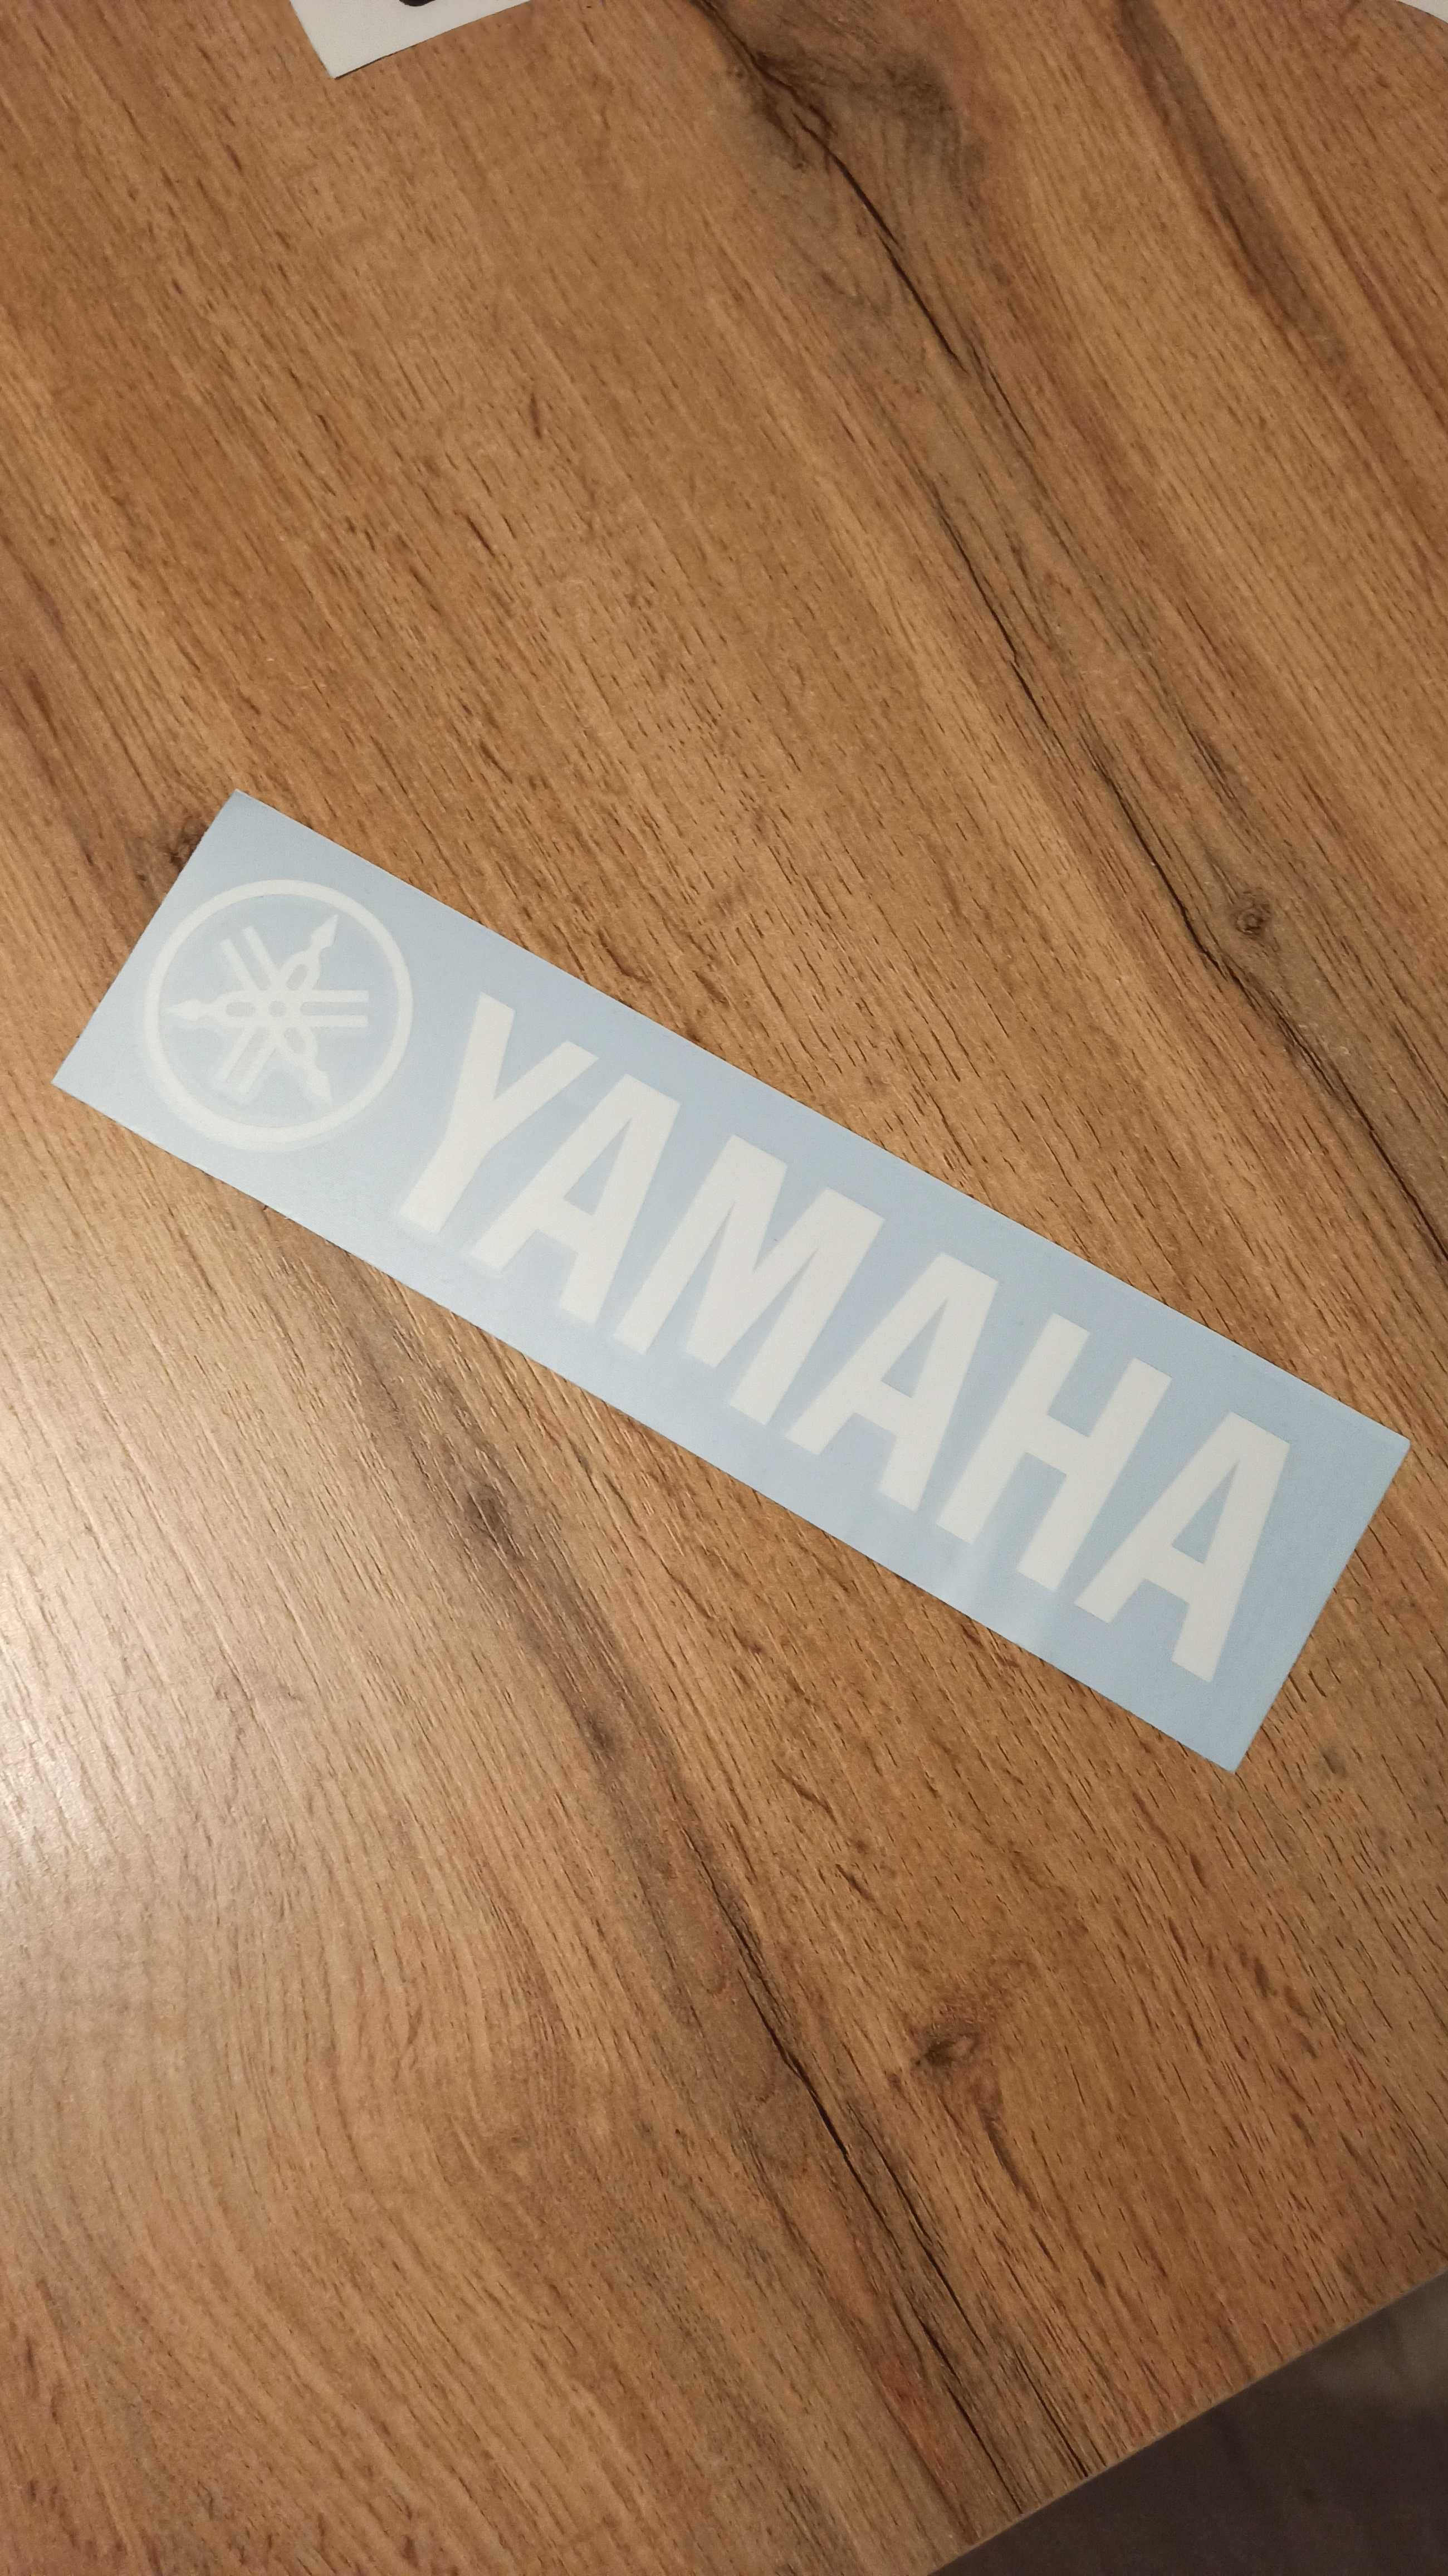 Naklejka biała 25x5,5 cm z logo YAMAHA na naciąg perkusyjny